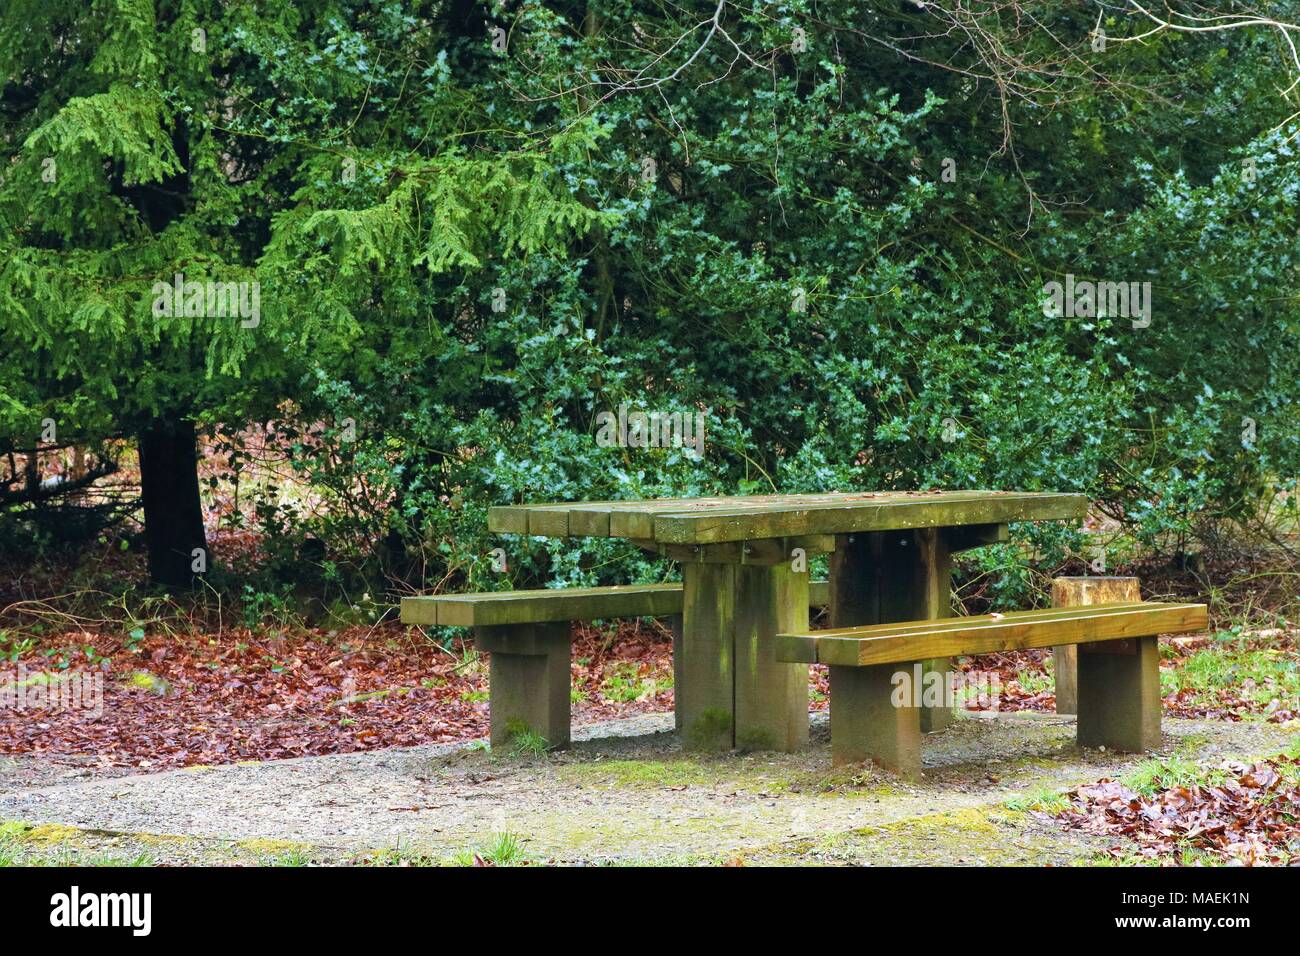 Table de pique-nique et des bancs en bois dans la forêt, humide par la pluie Banque D'Images